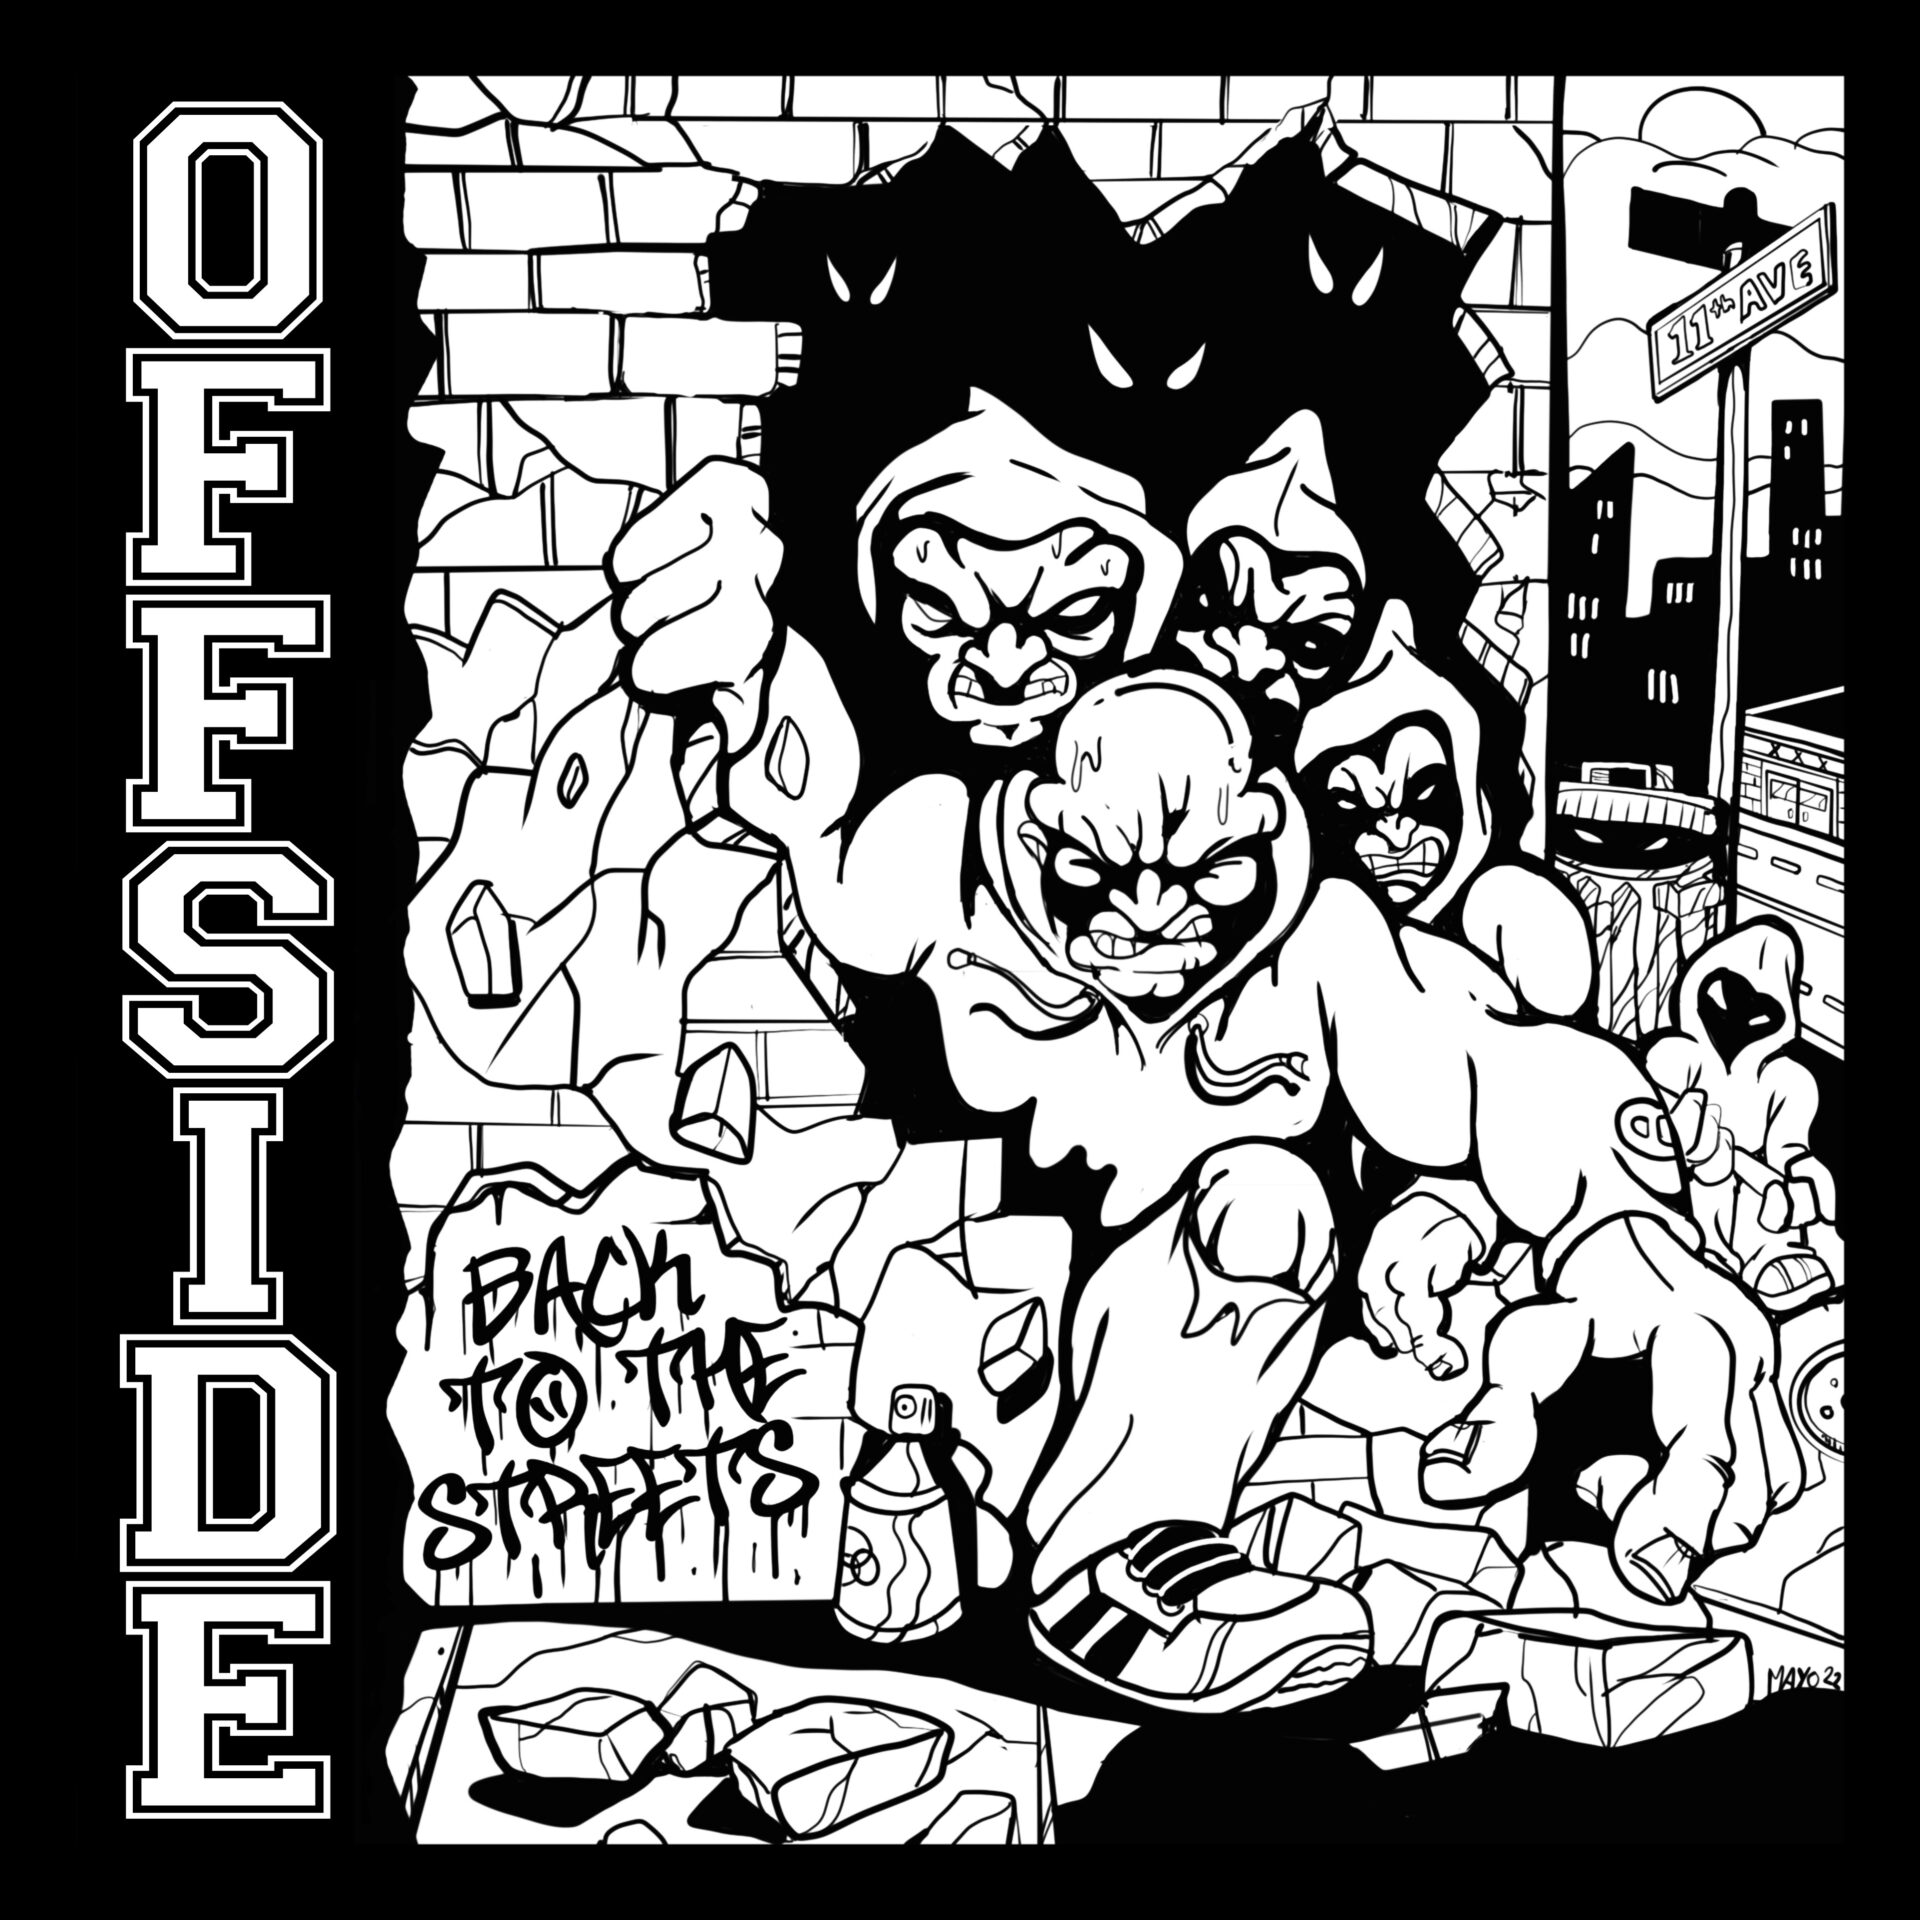 Pochette de Offside avec leur nouveau EP : Back to the Streets, disponible le 7 mars 2023